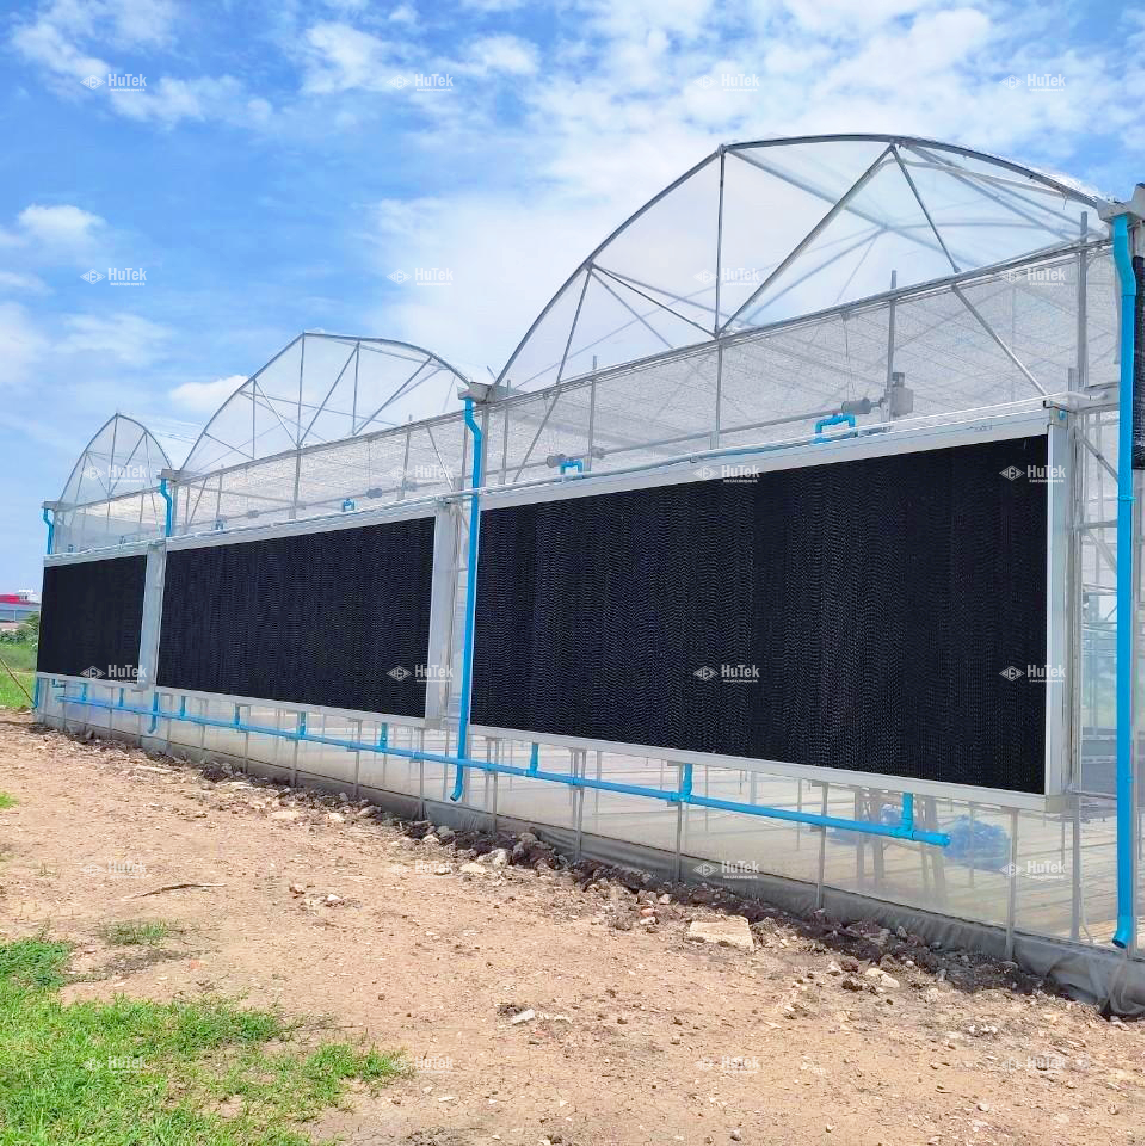 อีแว้ประบบปิด Evap farmคูลลิ่งแพด cooling padCeLPad พัดลมอุตสาหกรรมพัดลมฟาร์ม กัญชา ฟาร์มกัญชาชุดรางอีแว้ป